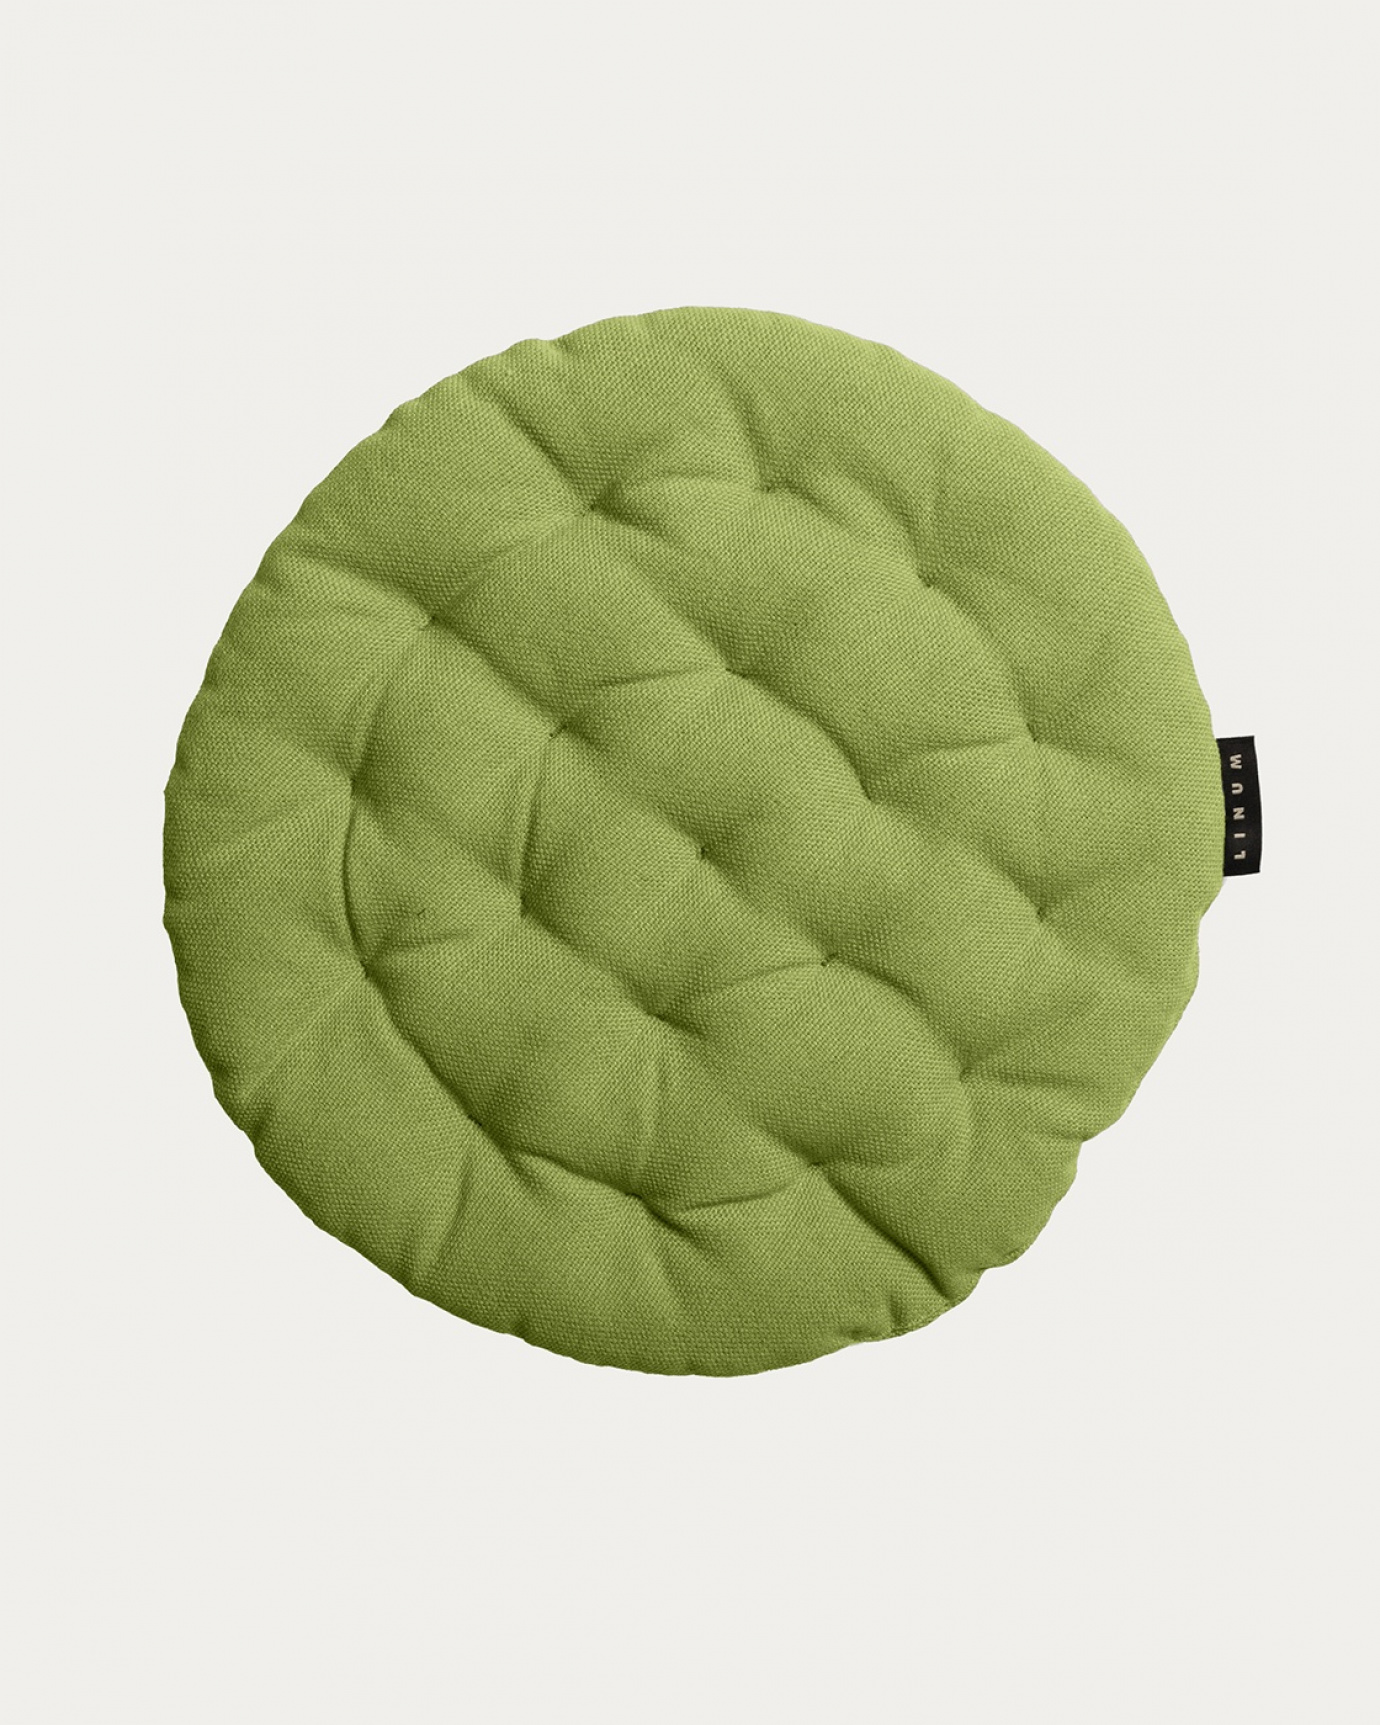 Immagine prodotto verde muschio PEPPER cuscini sedie di cotone con imbottitura in poliestere di LINUM DESIGN. Dimensioni ø37 cm.